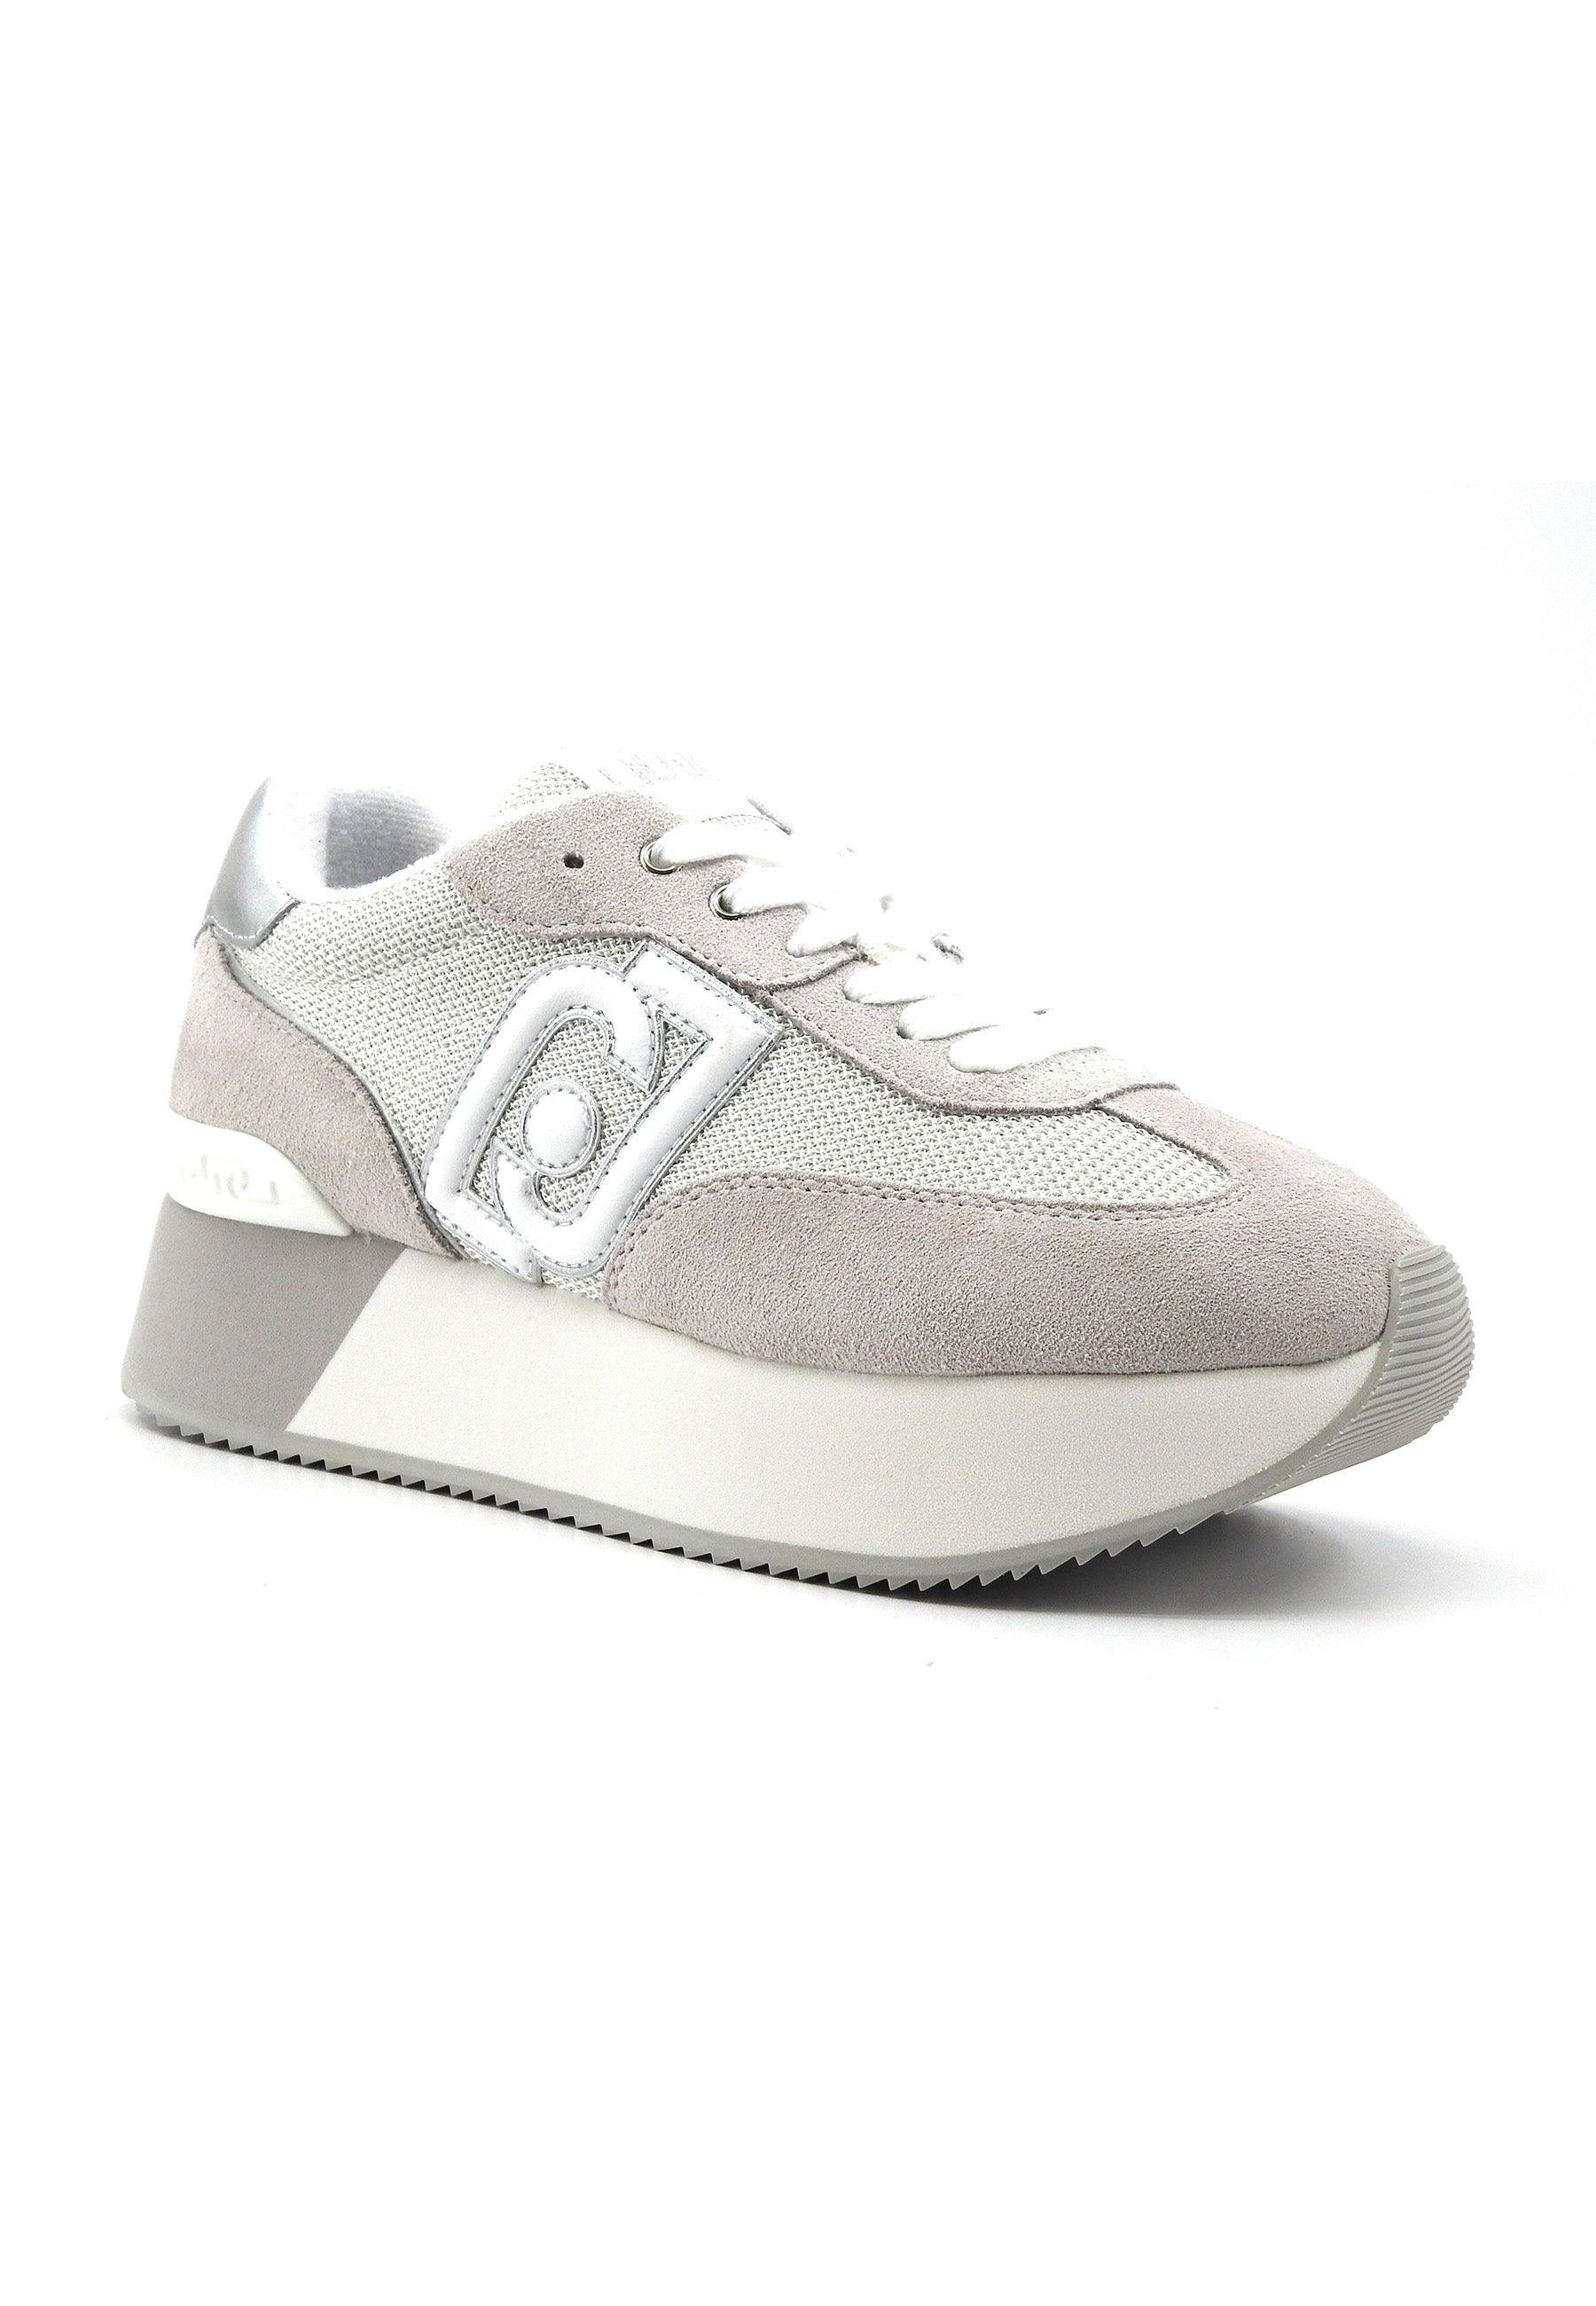 LIU JO Dreamy 02 Sneaker Donna White Silver BA4081PX031 - Sandrini Calzature e Abbigliamento